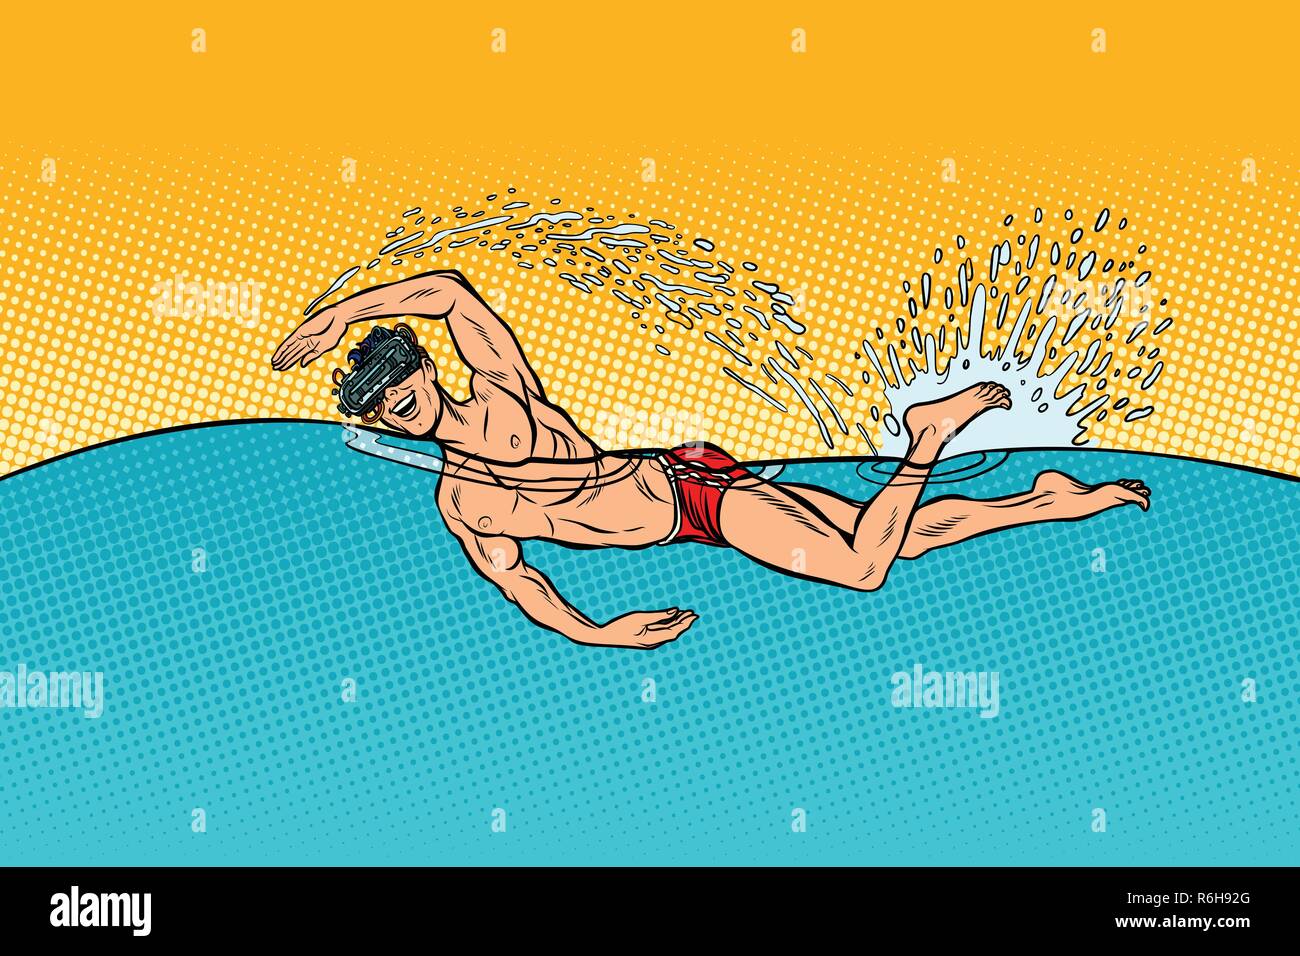 Virtual reality Brillen mann Schwimmer schwimmt. Pop Art retro Vektor illustration Vintage kitsch Stock Vektor